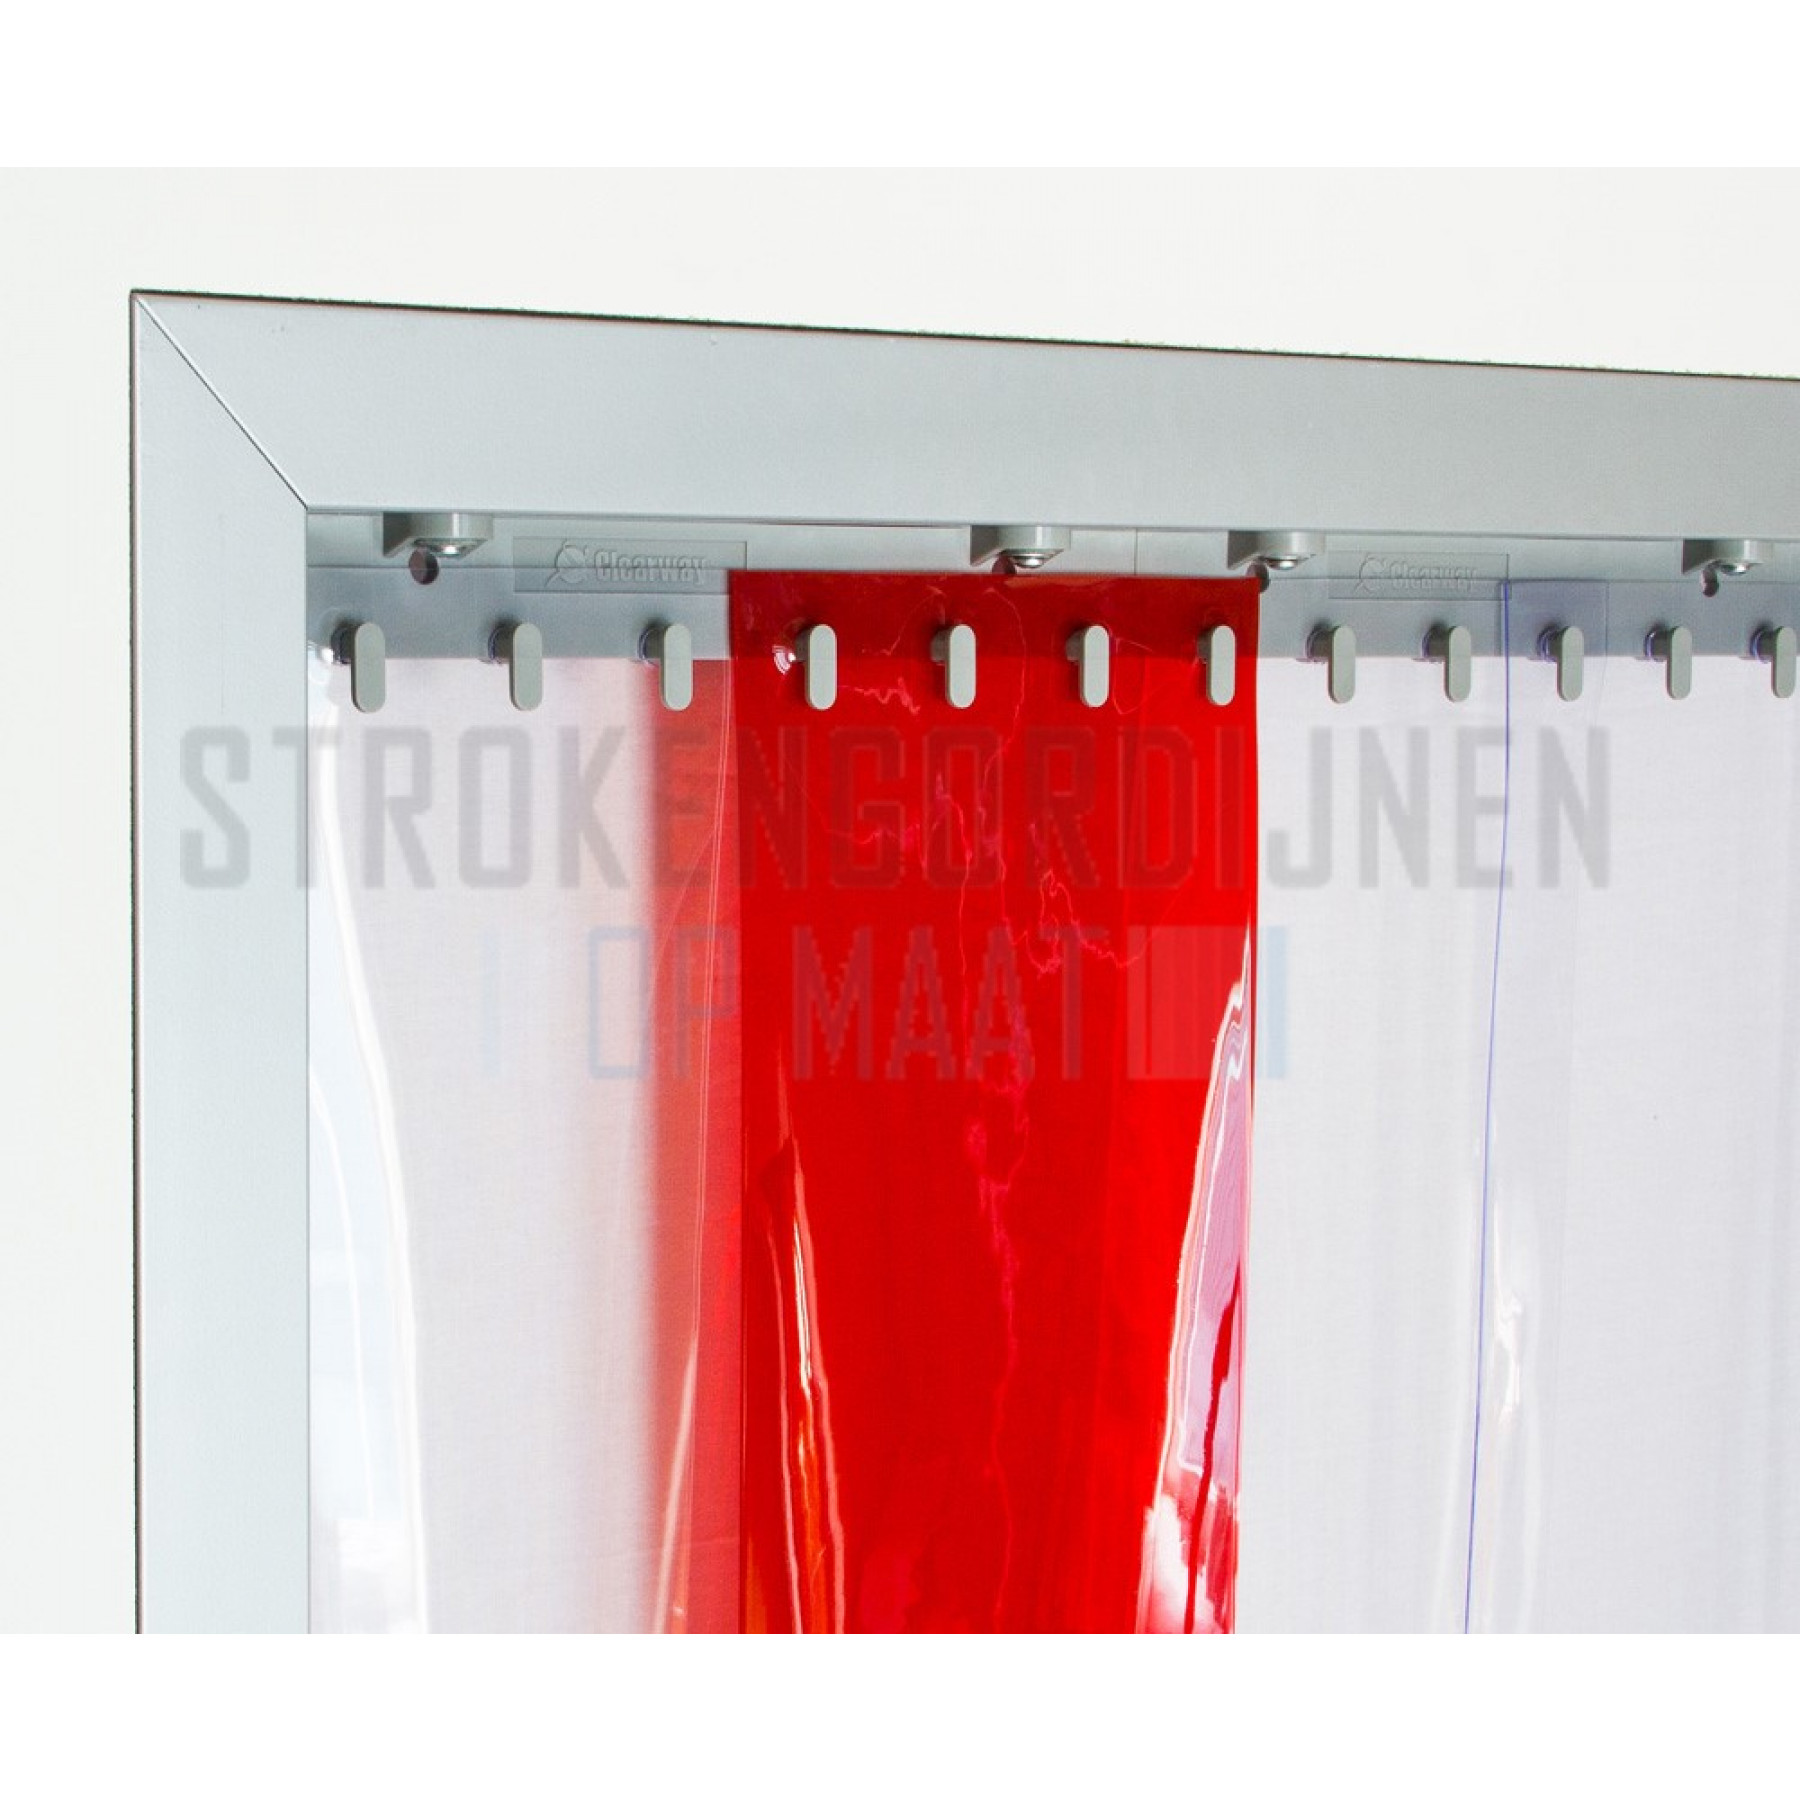 PVC Streifen zur Renovierung, 300mm breit, 3mm dick, Farbe Rot, transparent